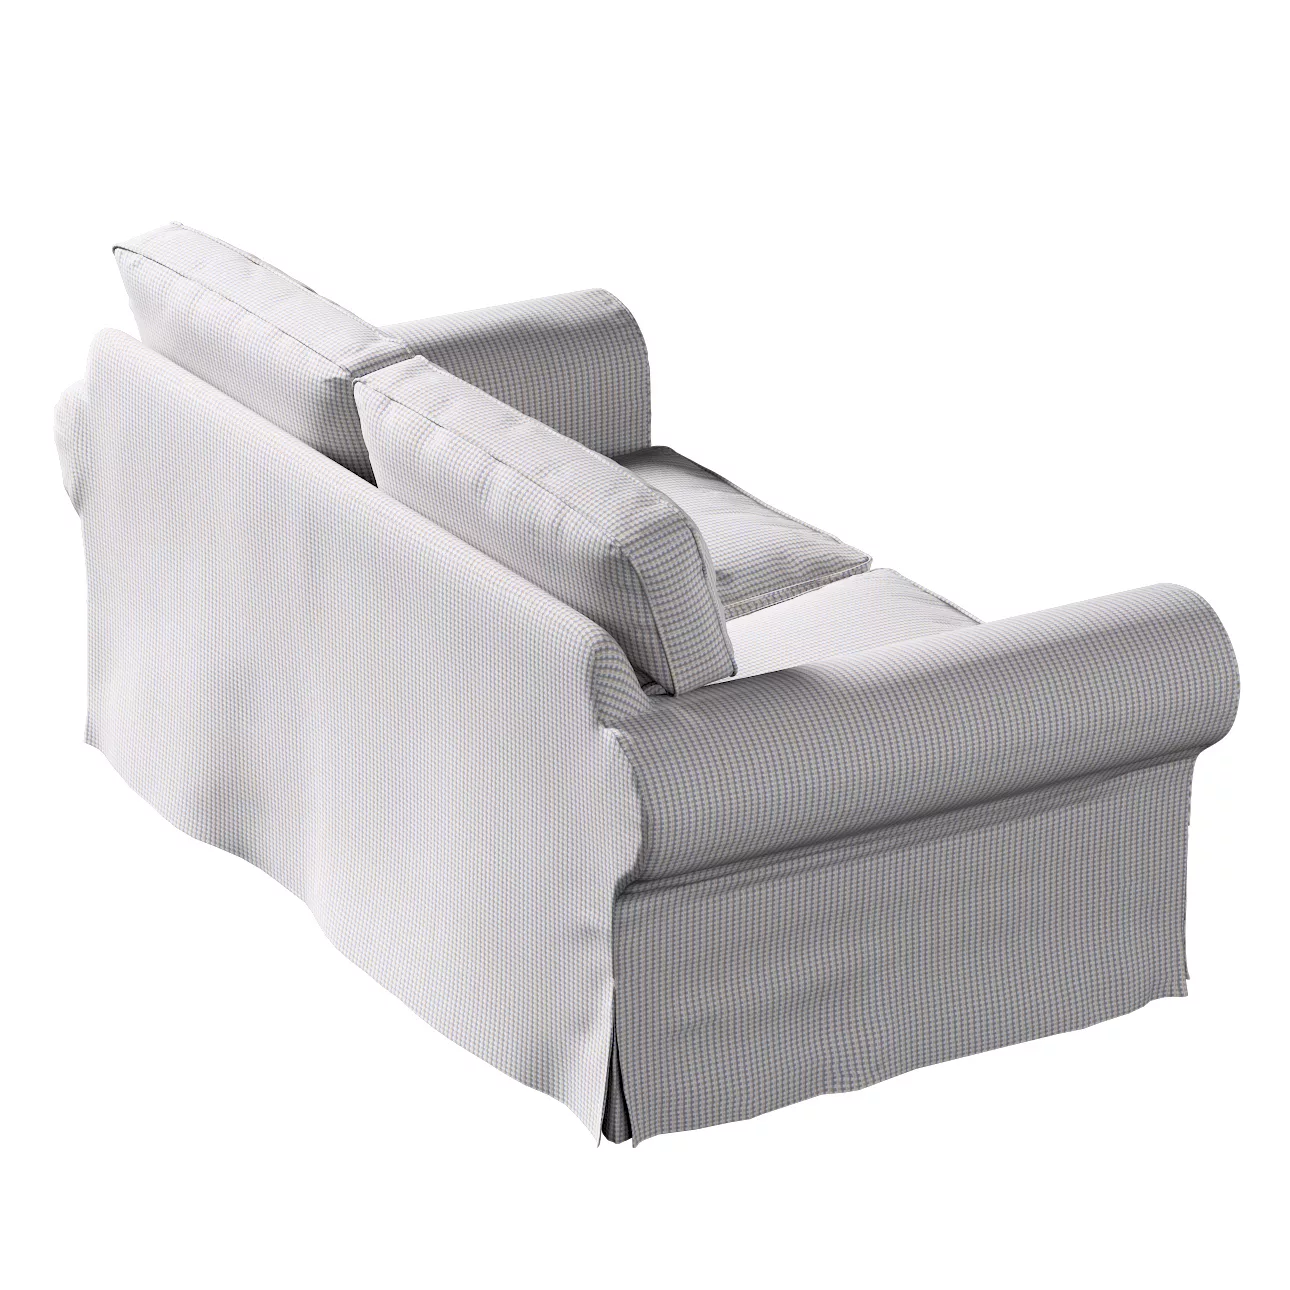 Bezug für Ektorp 2-Sitzer Schlafsofa NEUES Modell, beige-blau, Sofabezug fü günstig online kaufen